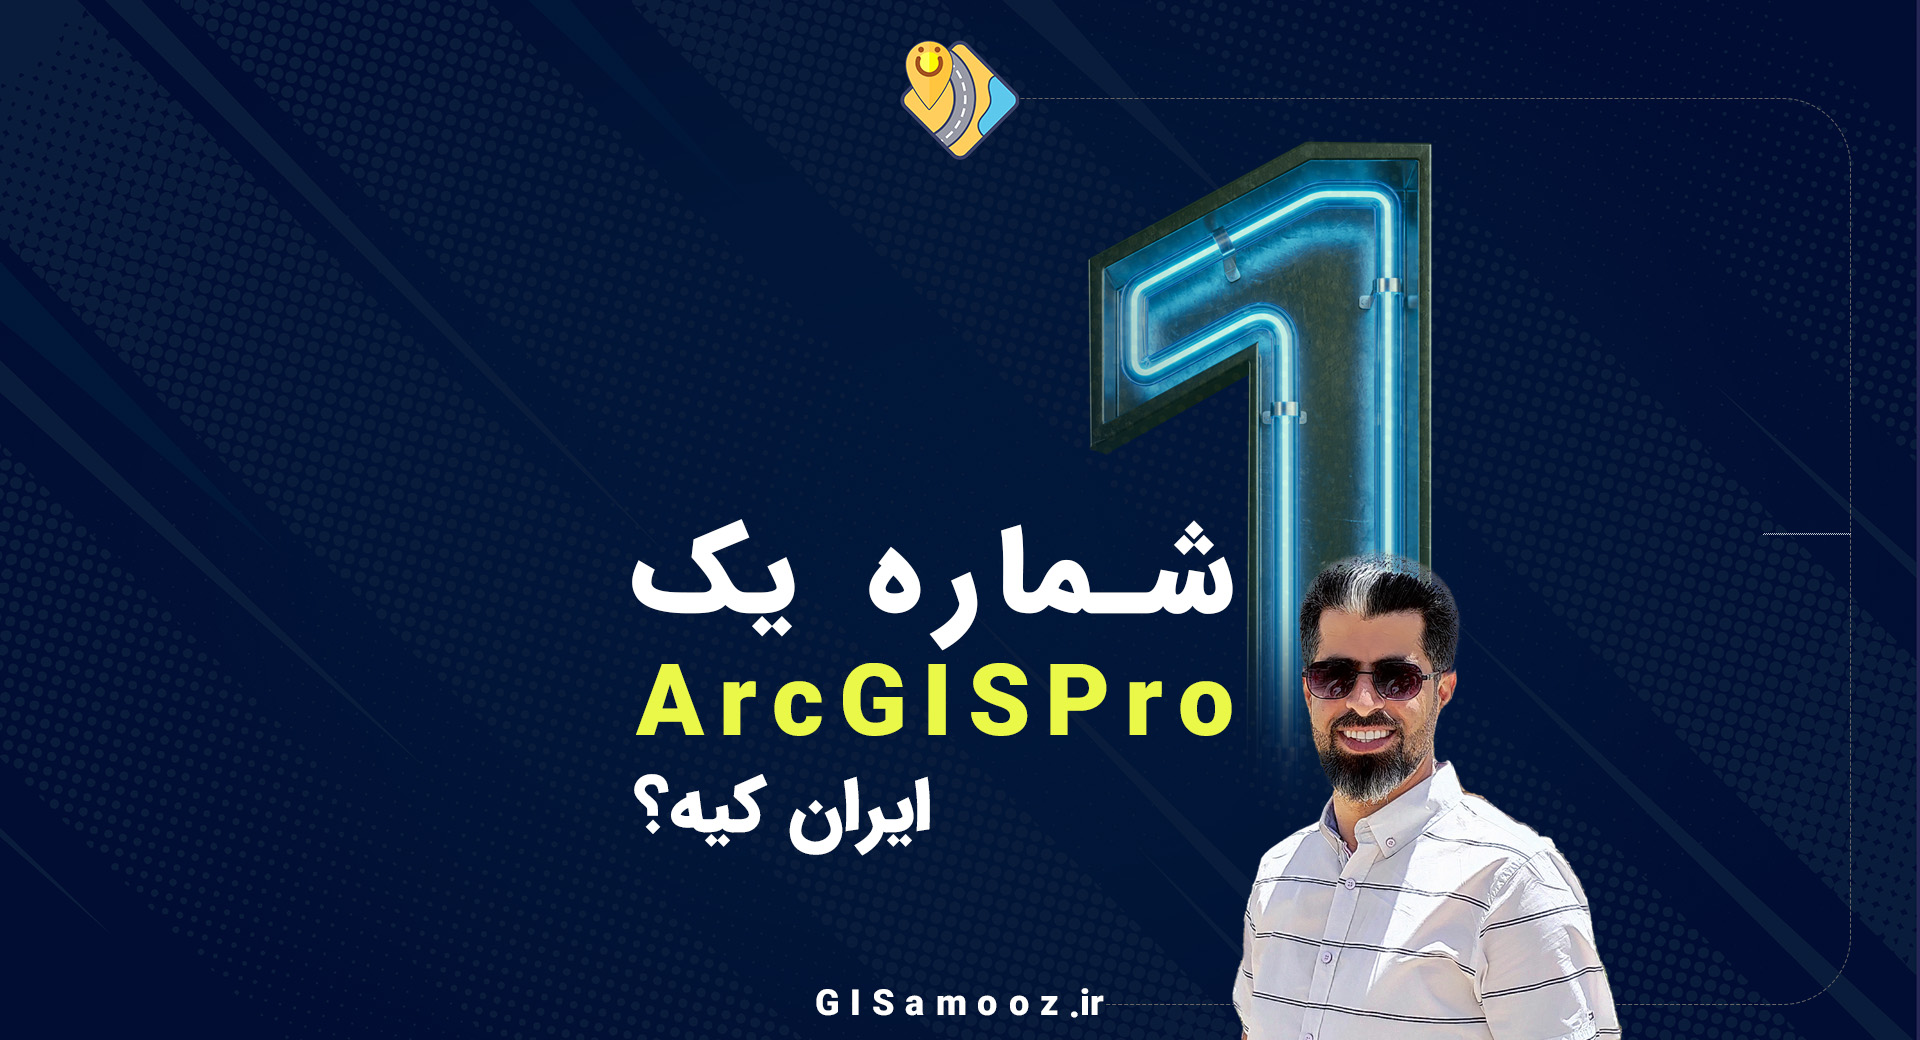 شماره یک ArcGIS Pro ایران کیه؟